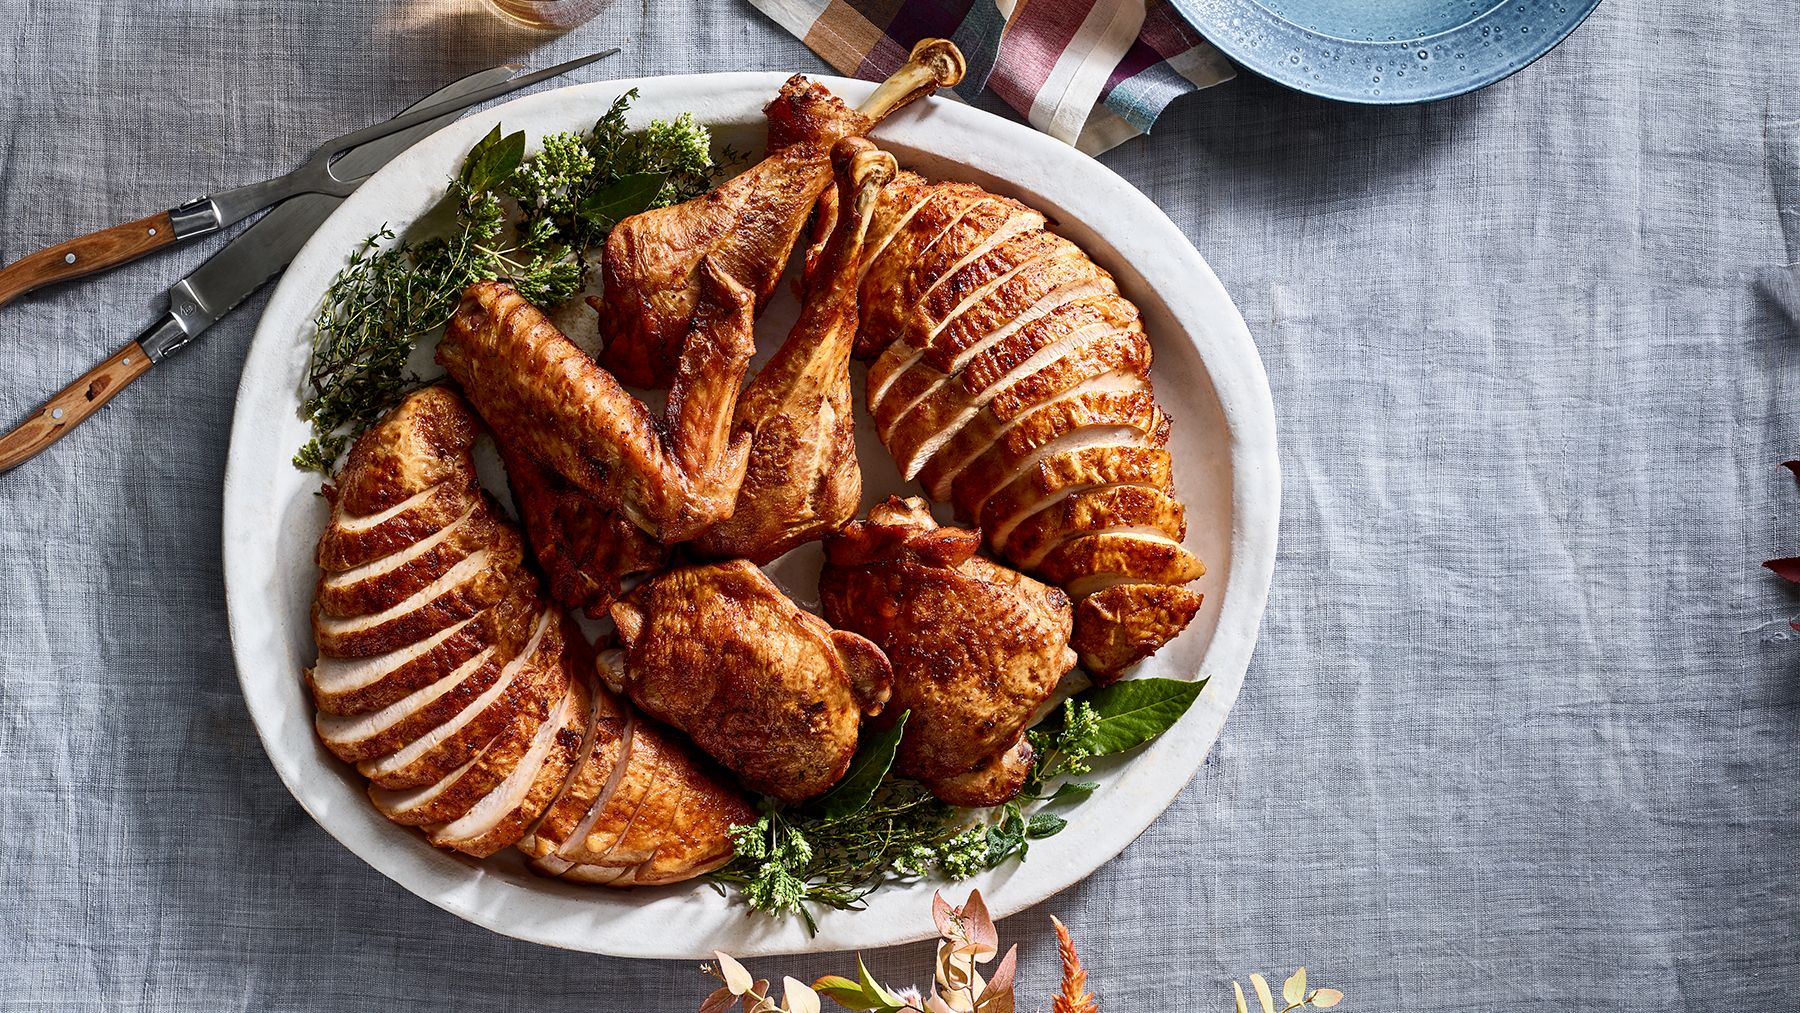 Clona meniului: no-baste-turkey-recipe (Rețete de prăjire)